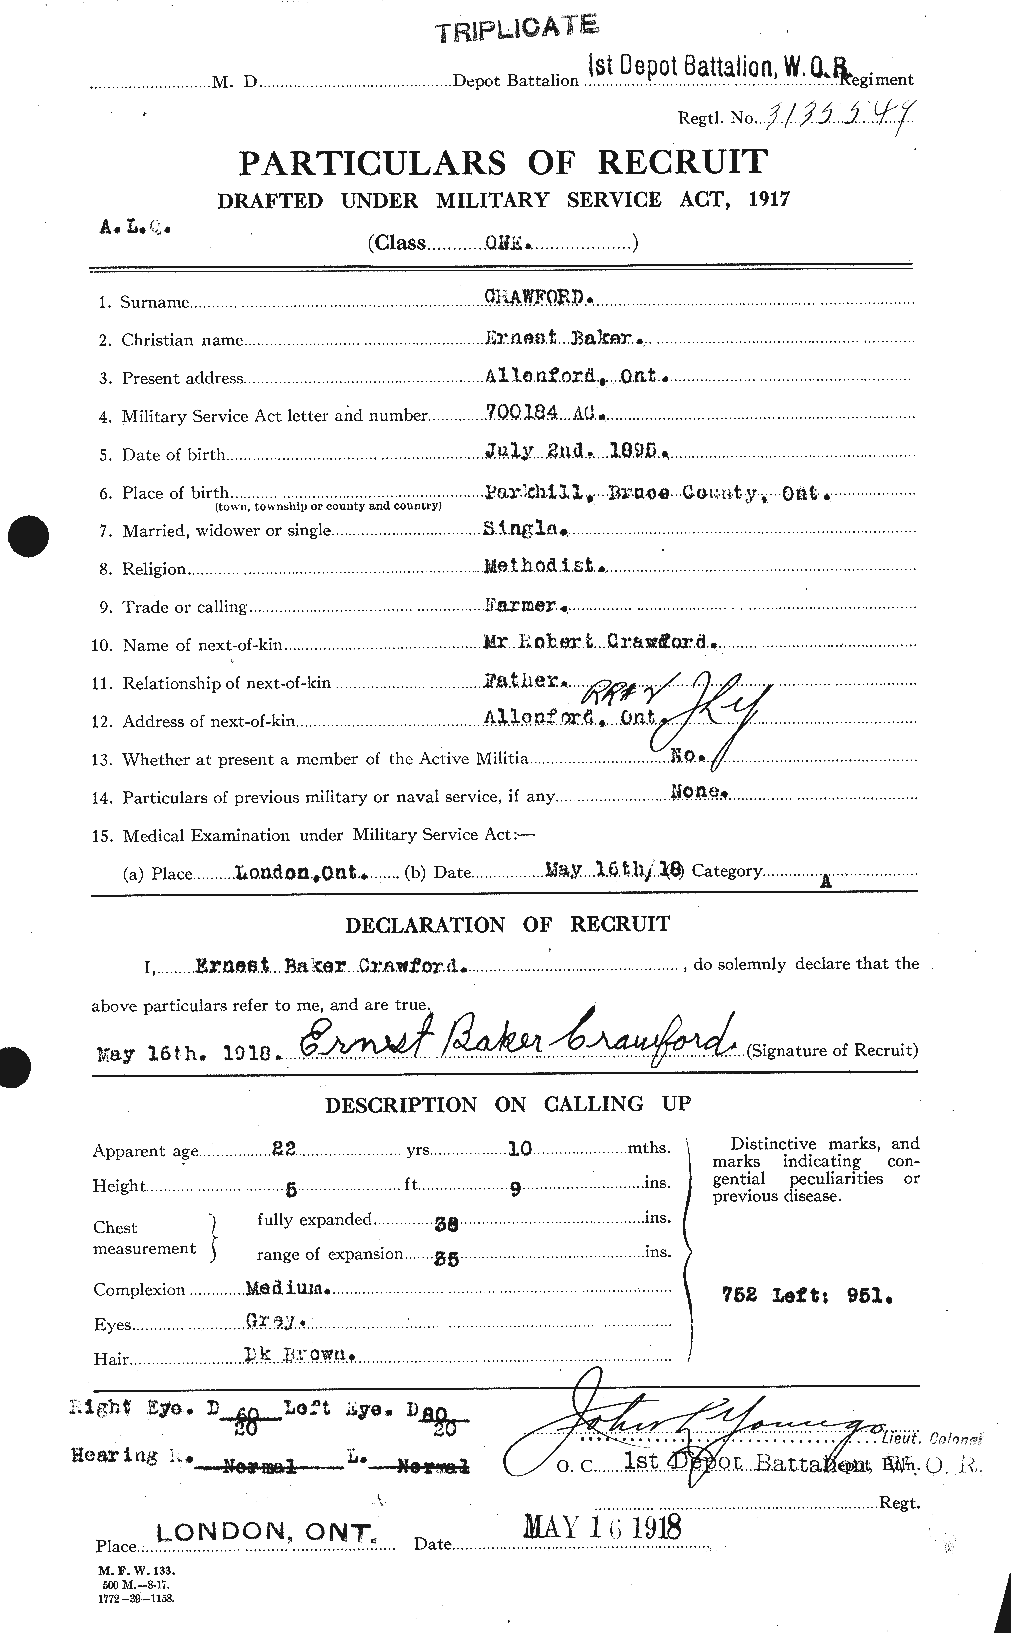 Dossiers du Personnel de la Première Guerre mondiale - CEC 060746a